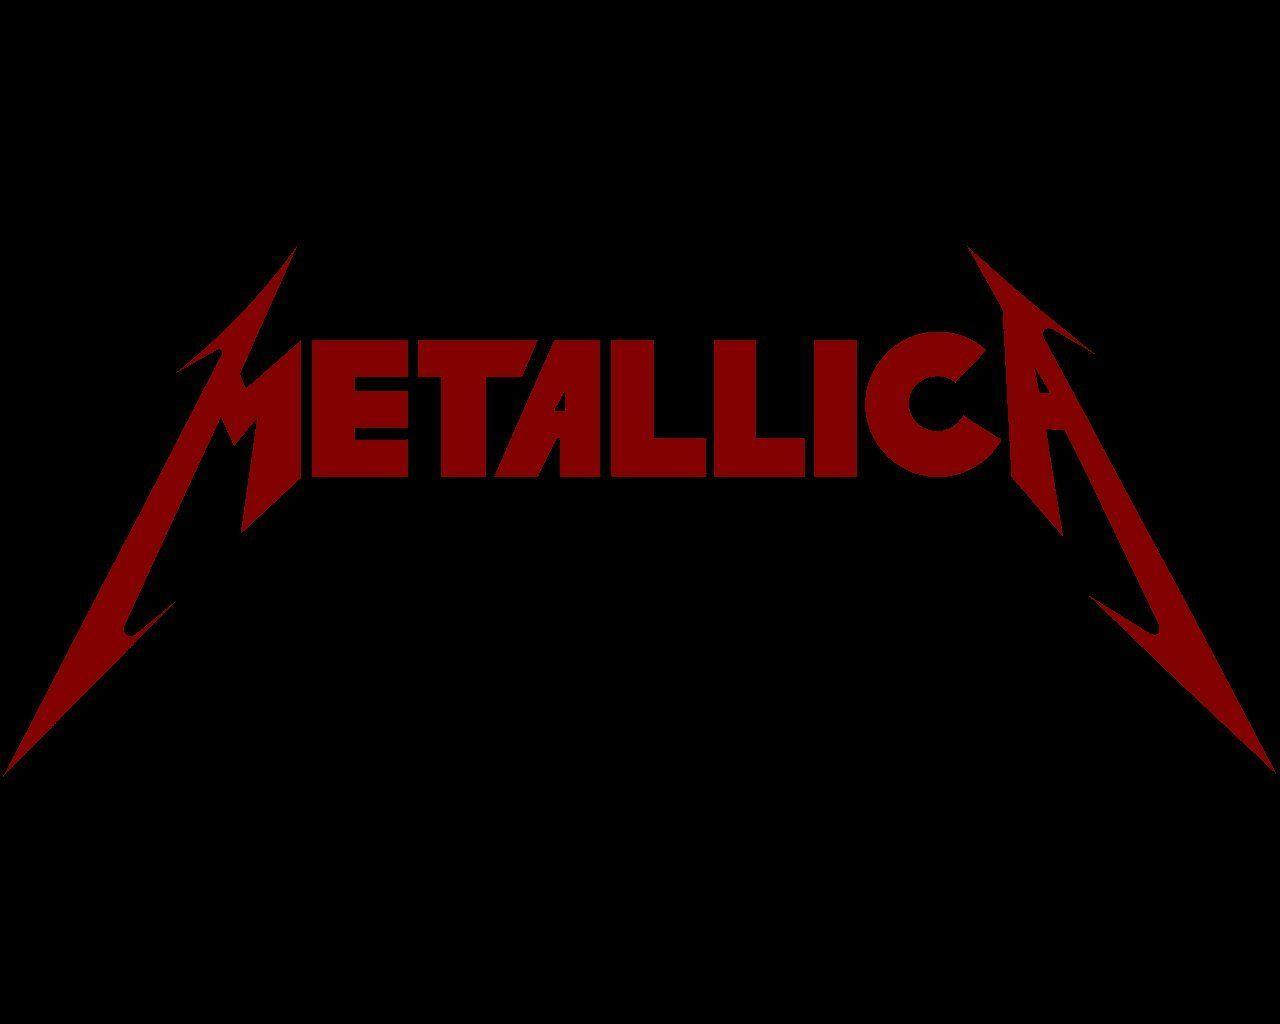 Red Metallica Logo - spdecals Metallica Heavy Metal Car Window Vinyl Decal